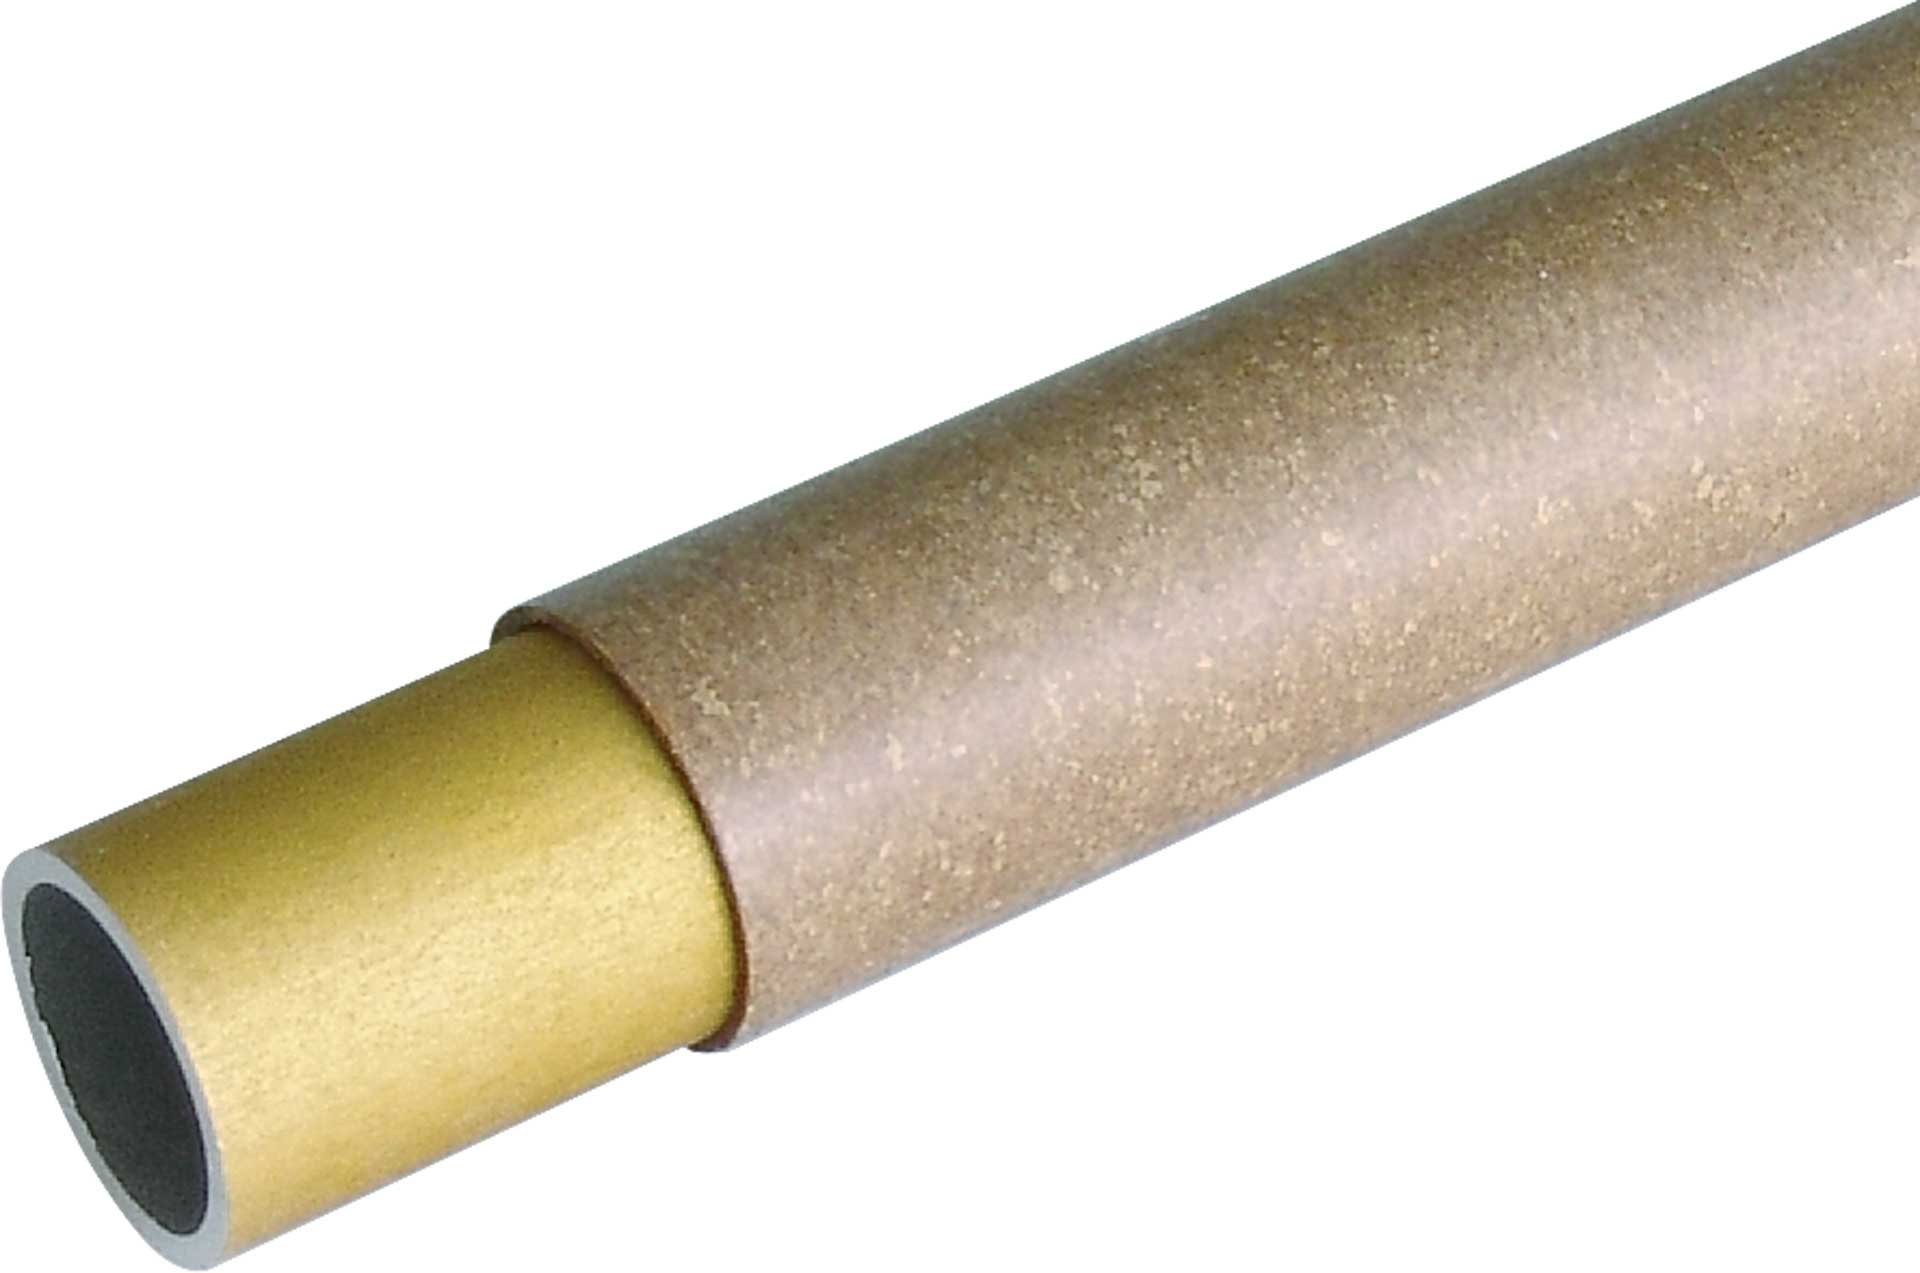 PETRAUSCH Strongal connecteur de surface 50/1,3mm 1000mm complet, guidage 1m, épaisseur de paroi 1,3mm, env,781g